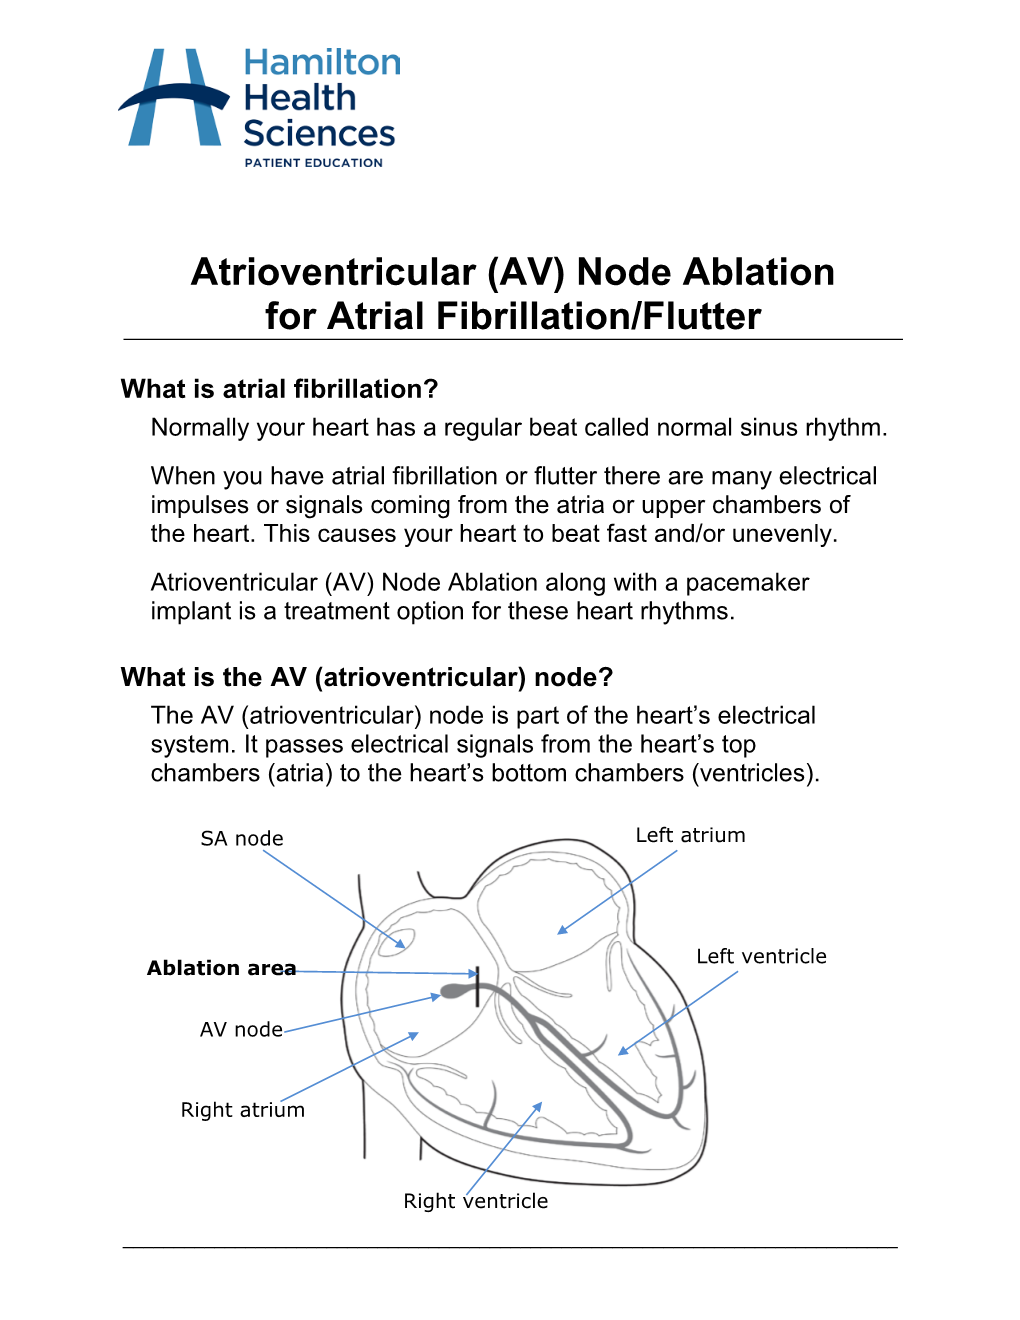 (AV) Node Ablation for Atrial Fibrillation/Flutter